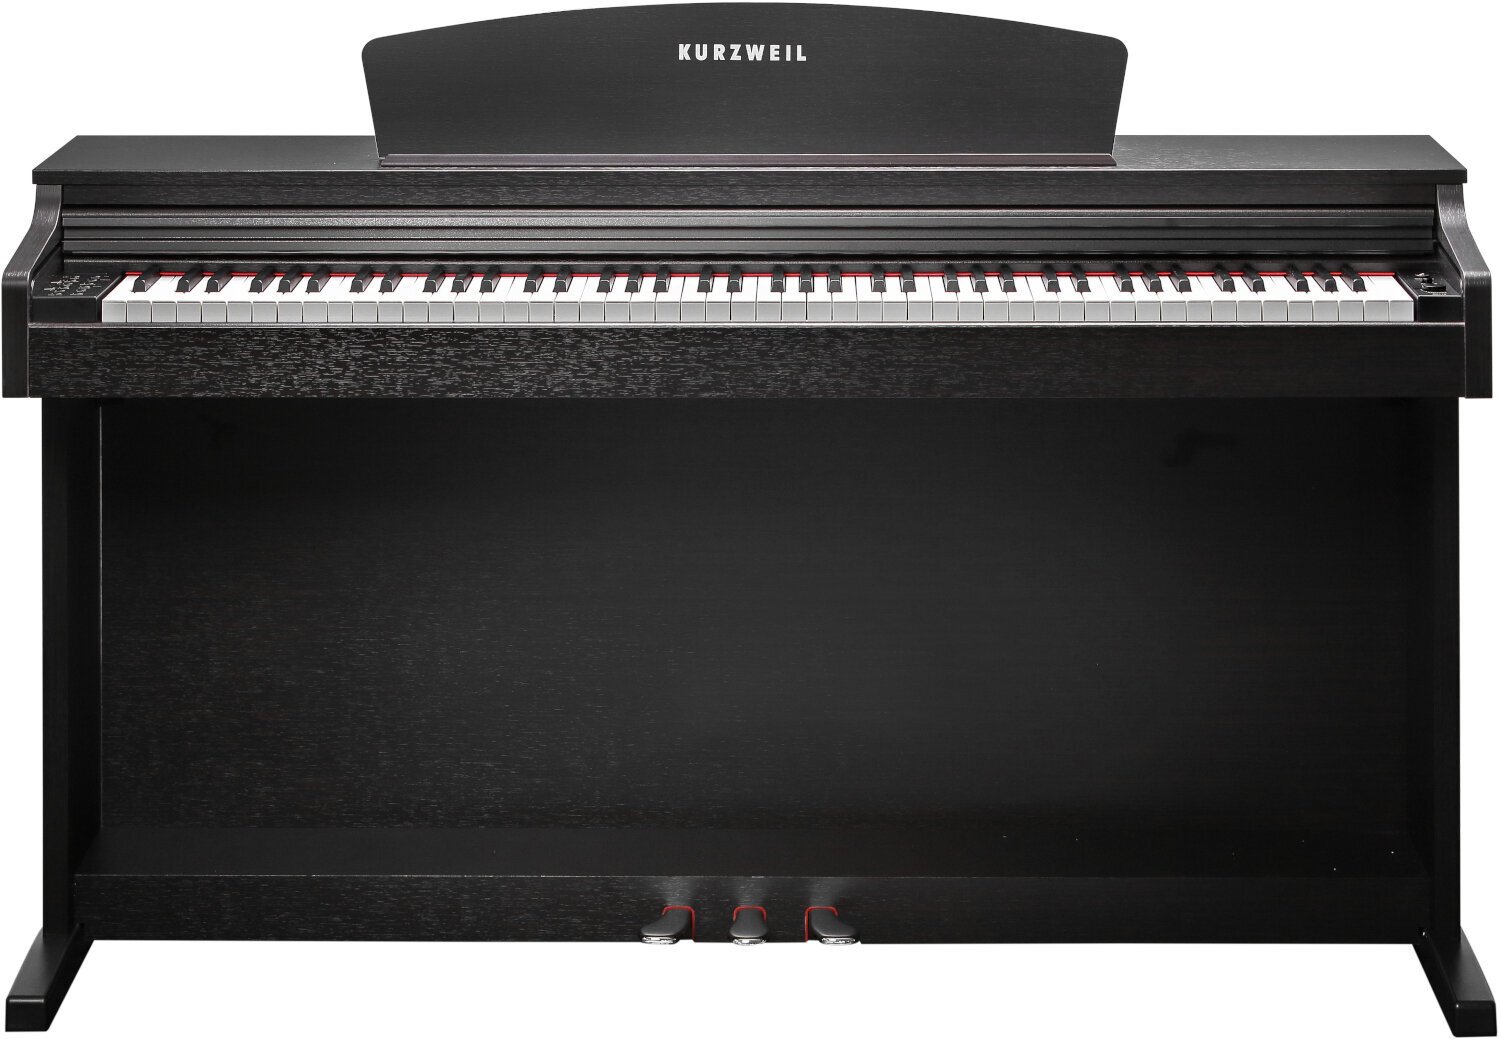 Piano digital Kurzweil M115 Simulated Rosewood Piano digital